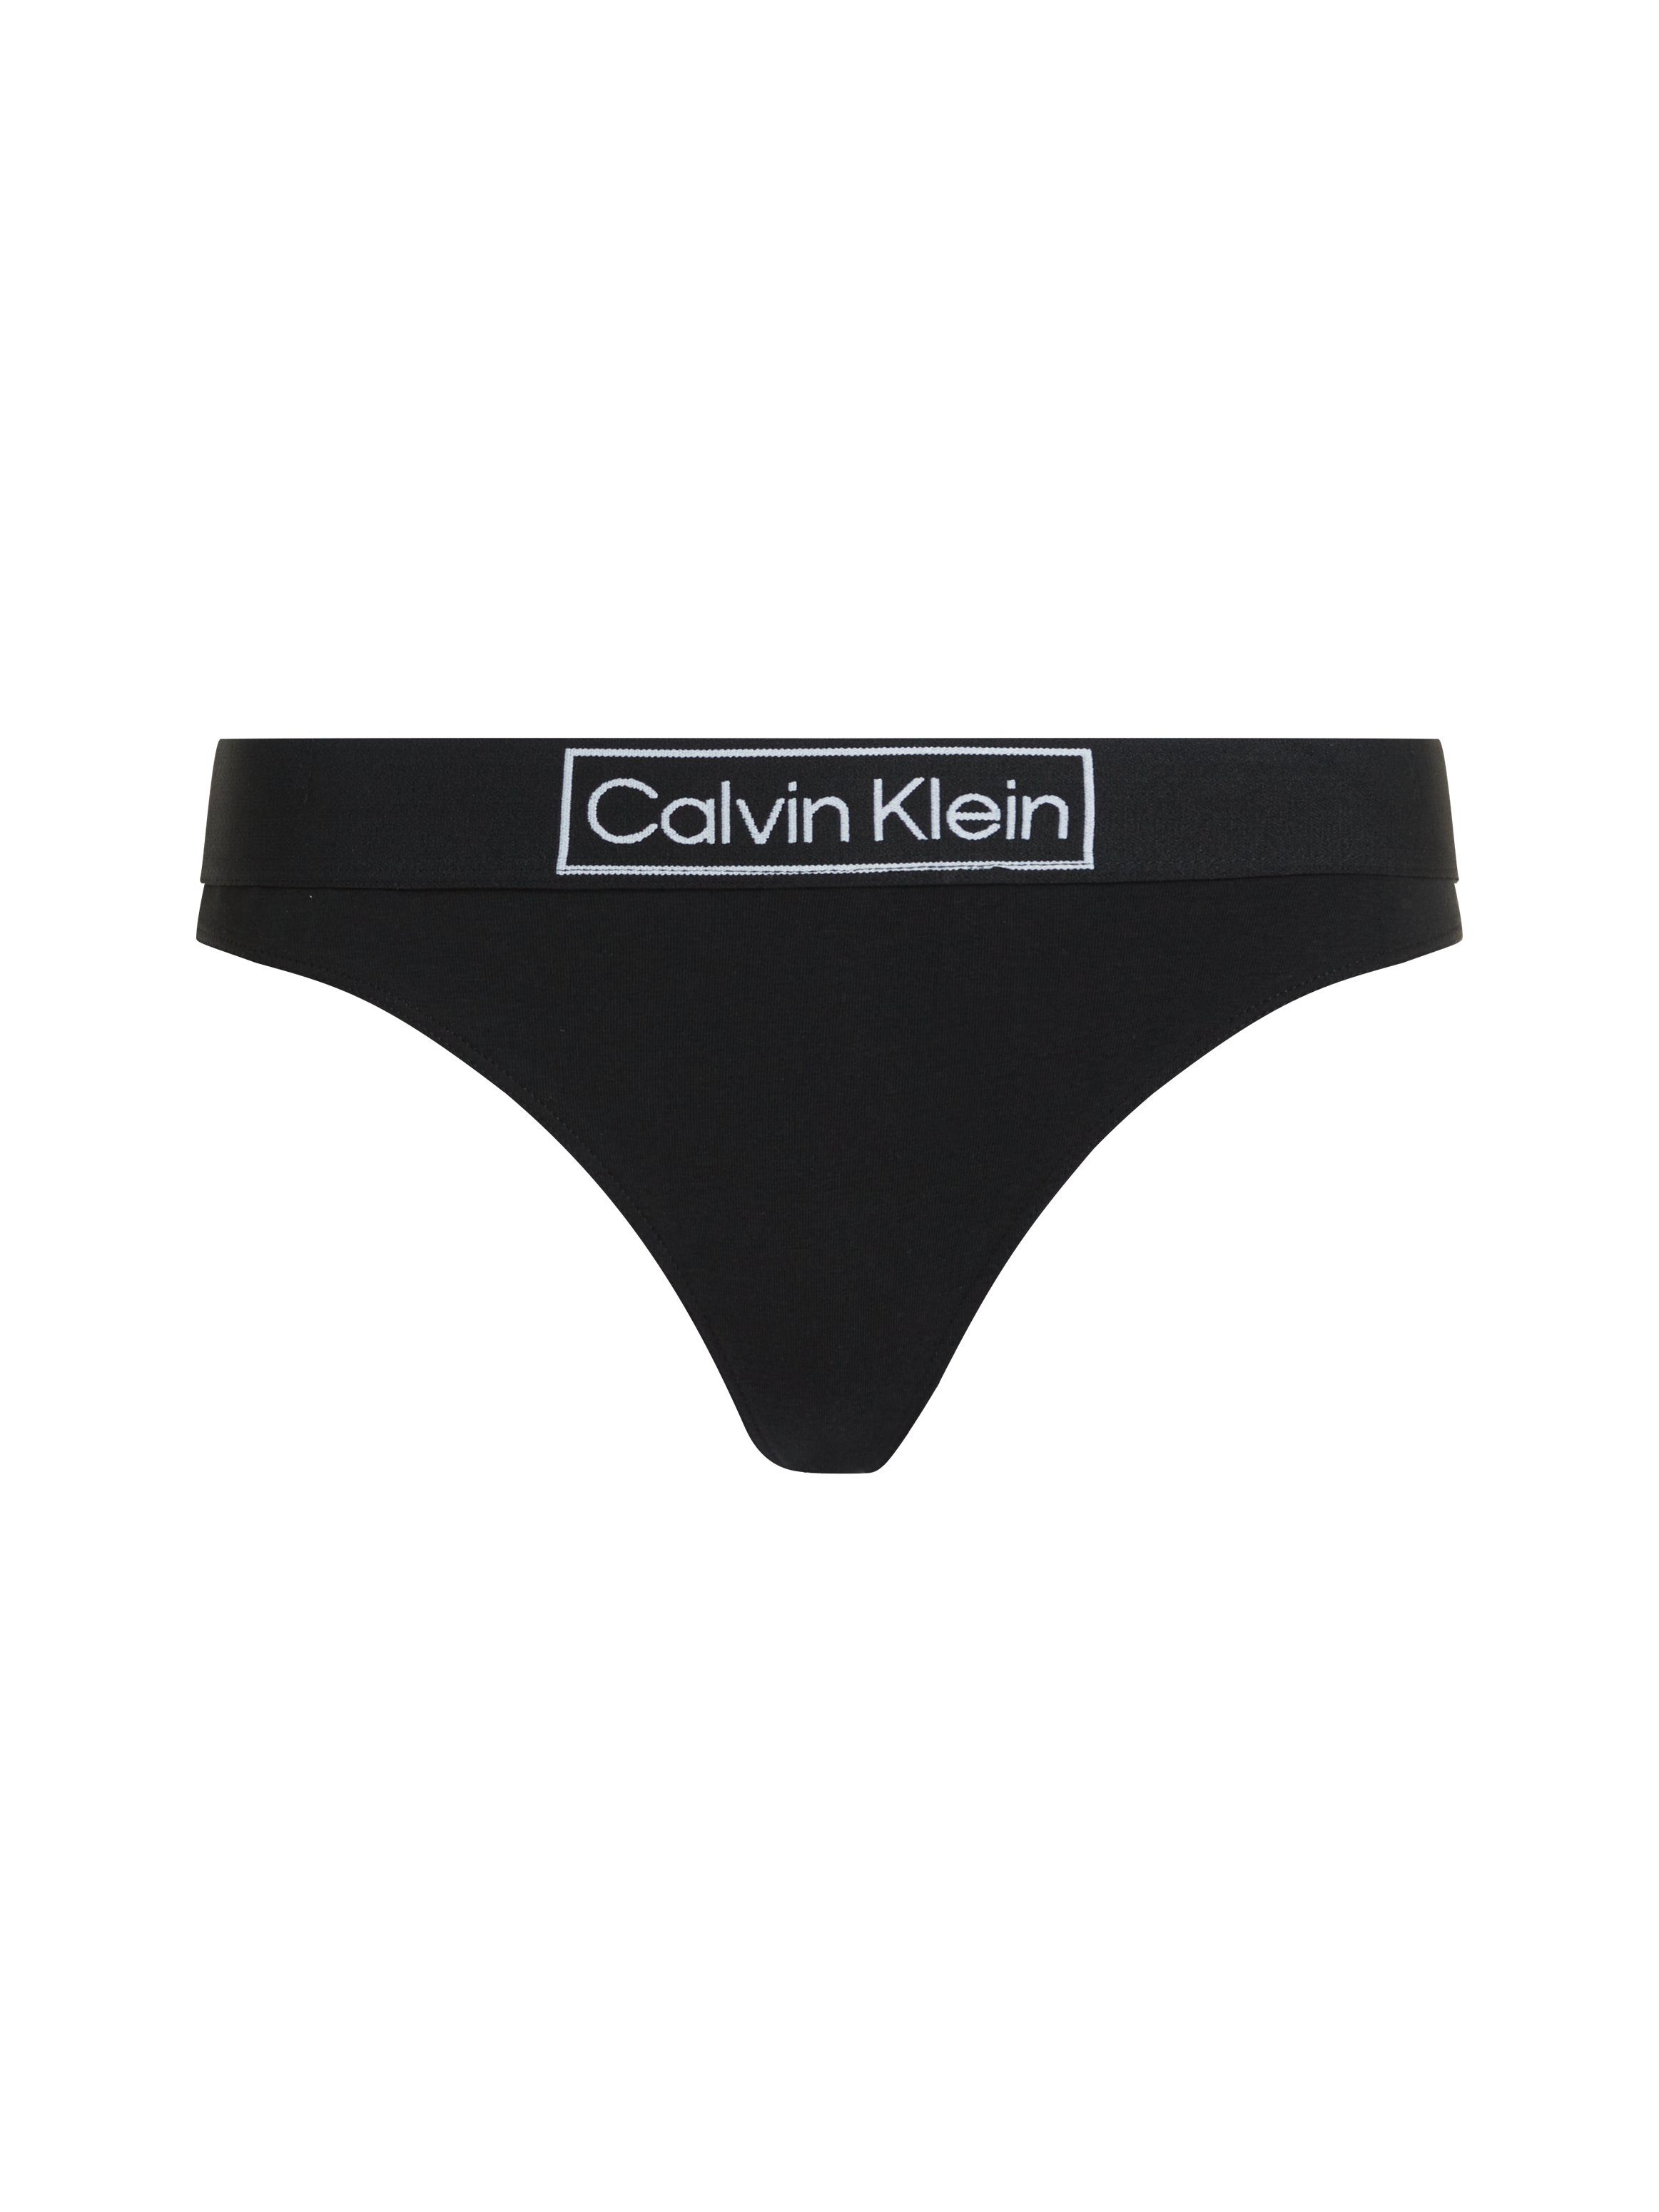 Bund Klein am Underwear schwarz Logoschriftzug Calvin mit String